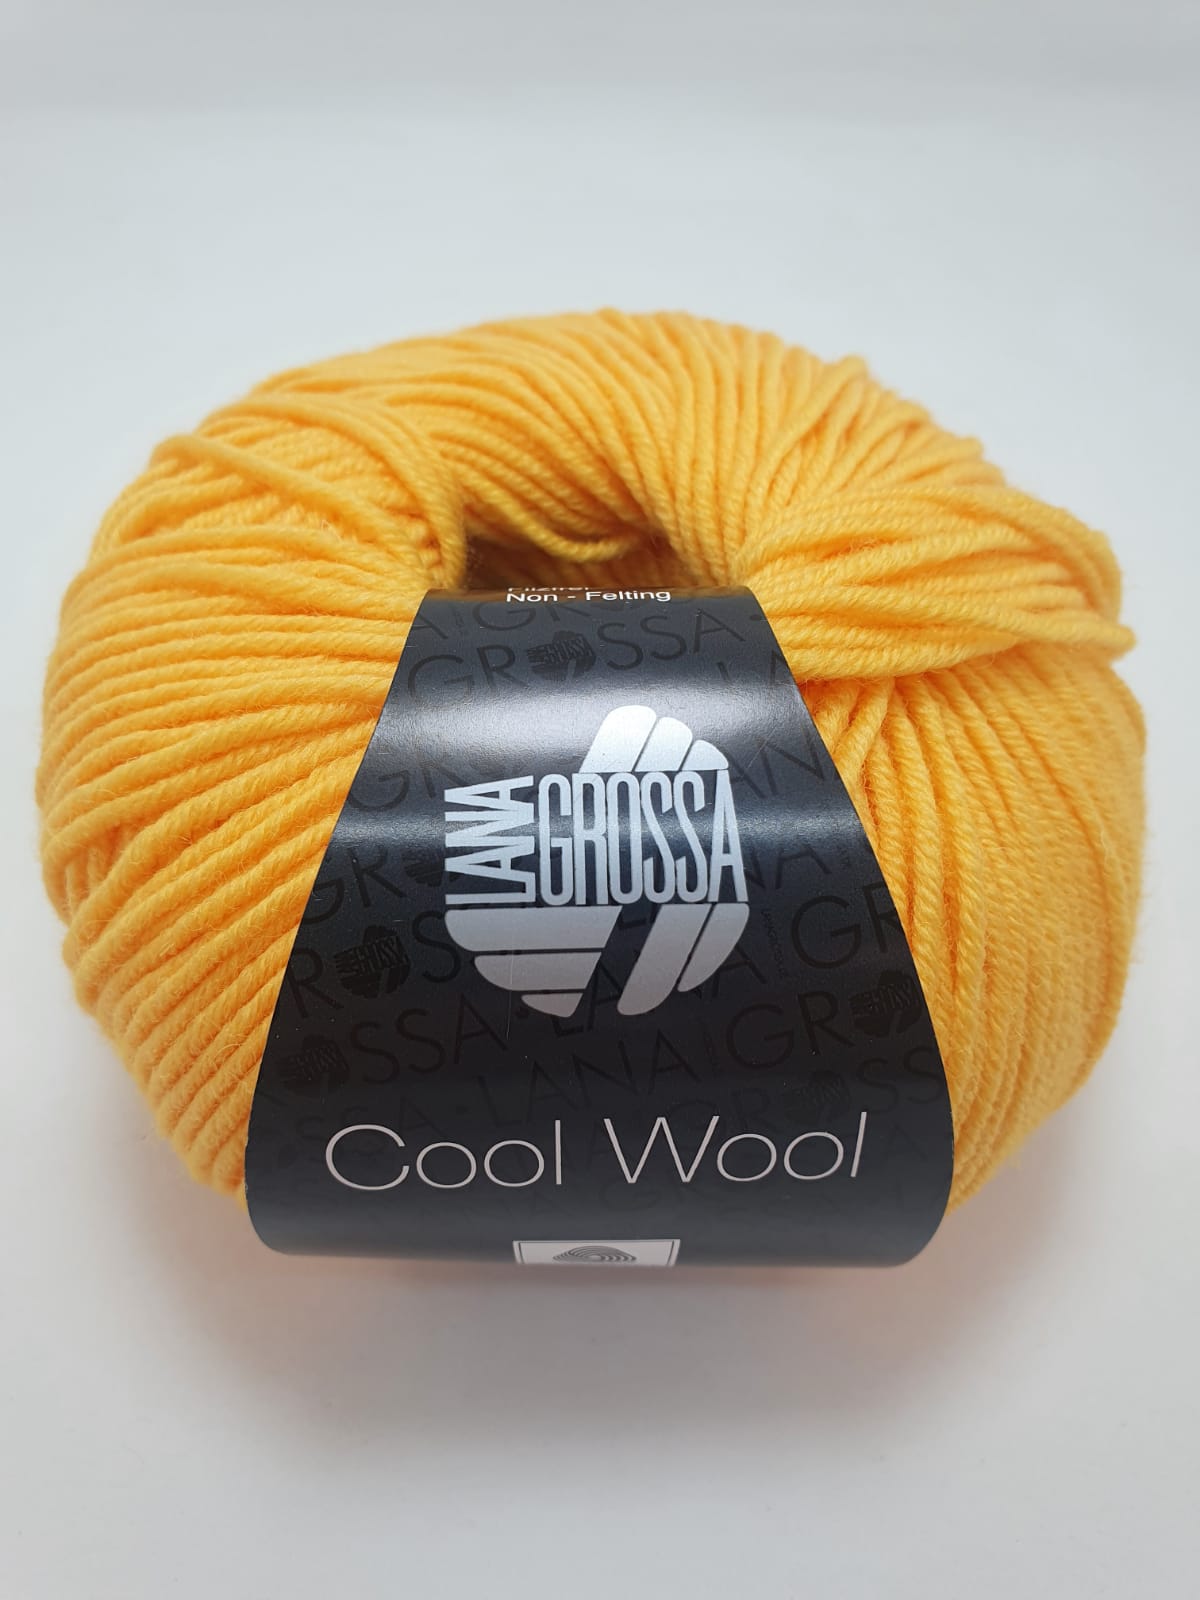 Lana Grossa Cool Wool kleur 2085